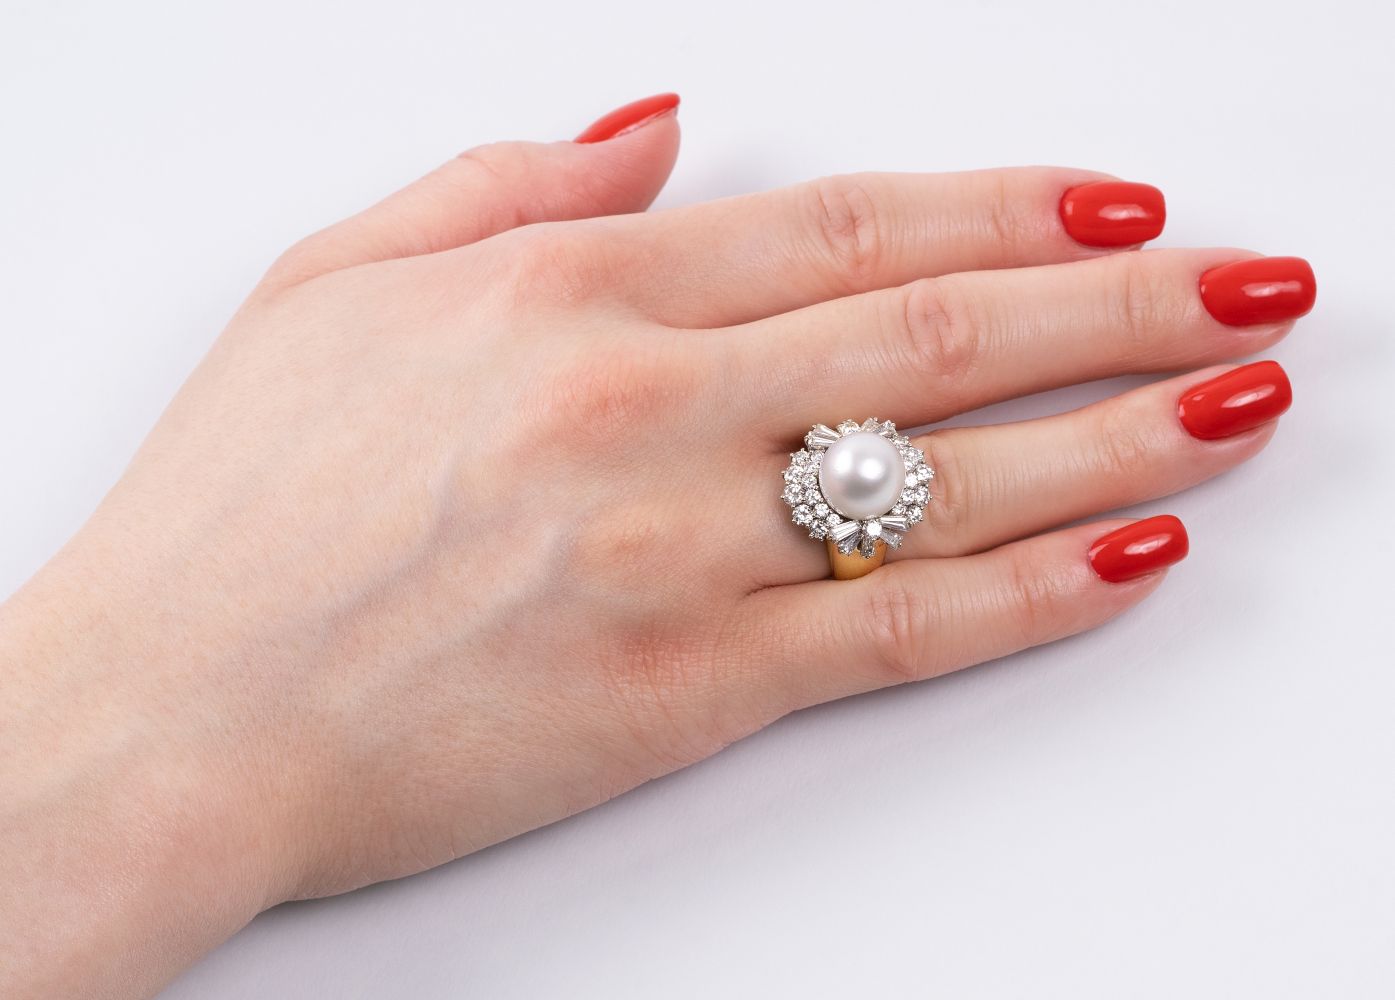 Südseeperlen-Ring mit hochwertigem Diamant-Besatz - Bild 2